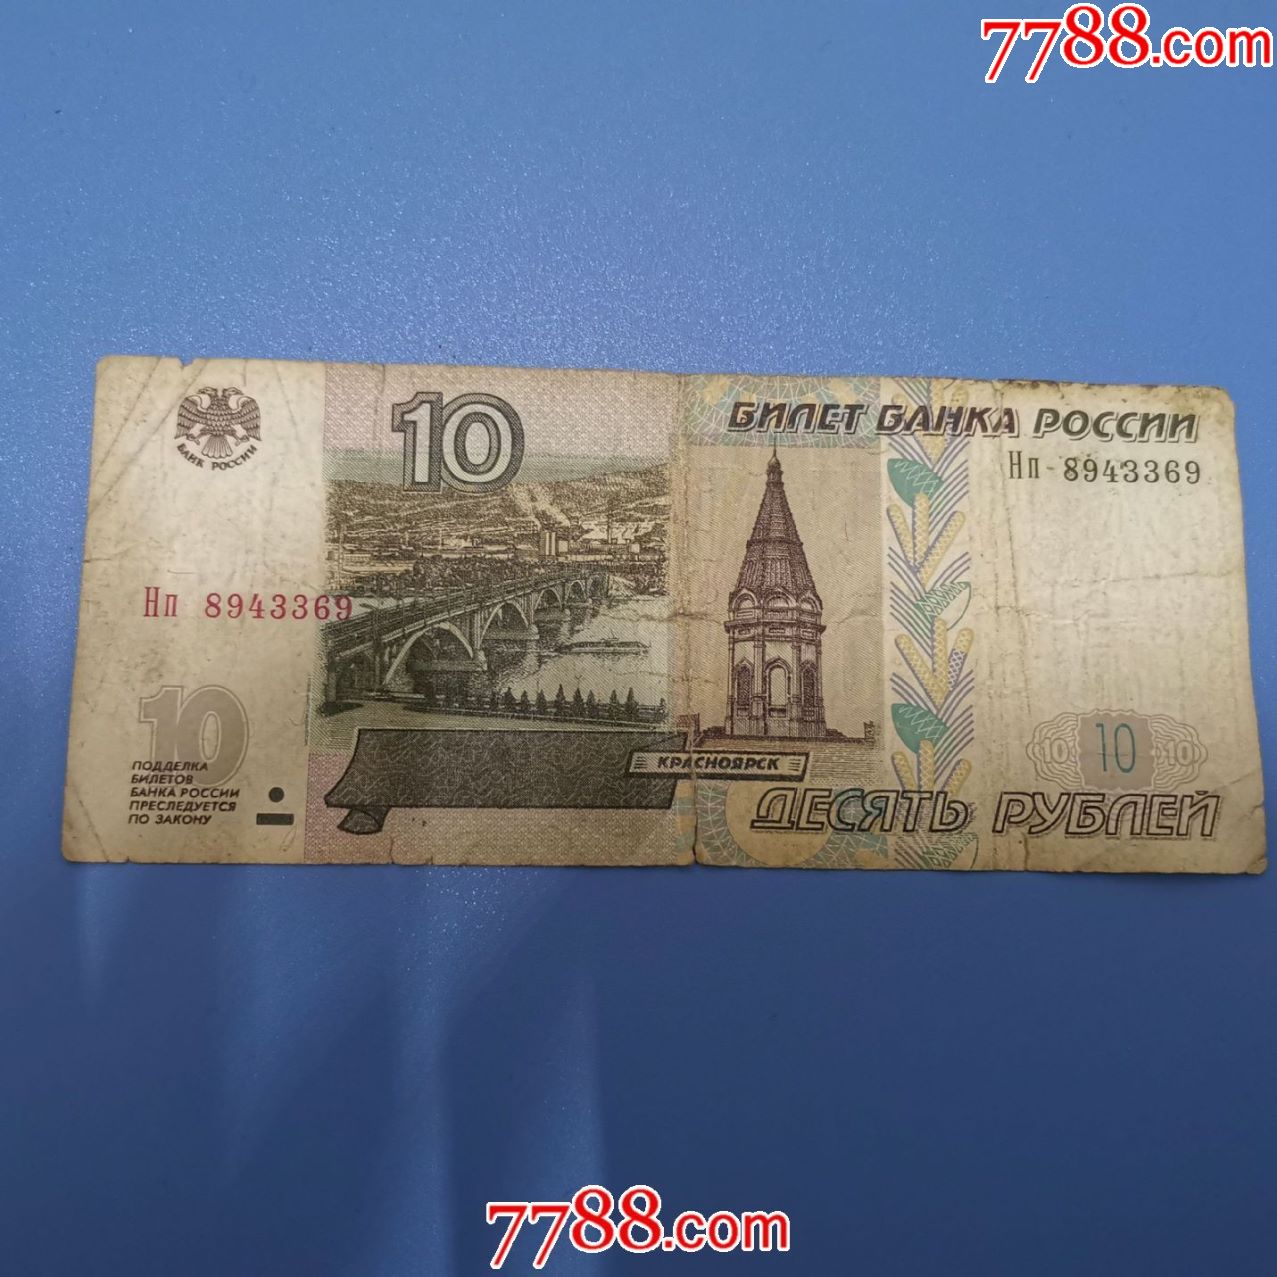 1997年俄罗斯10卢布